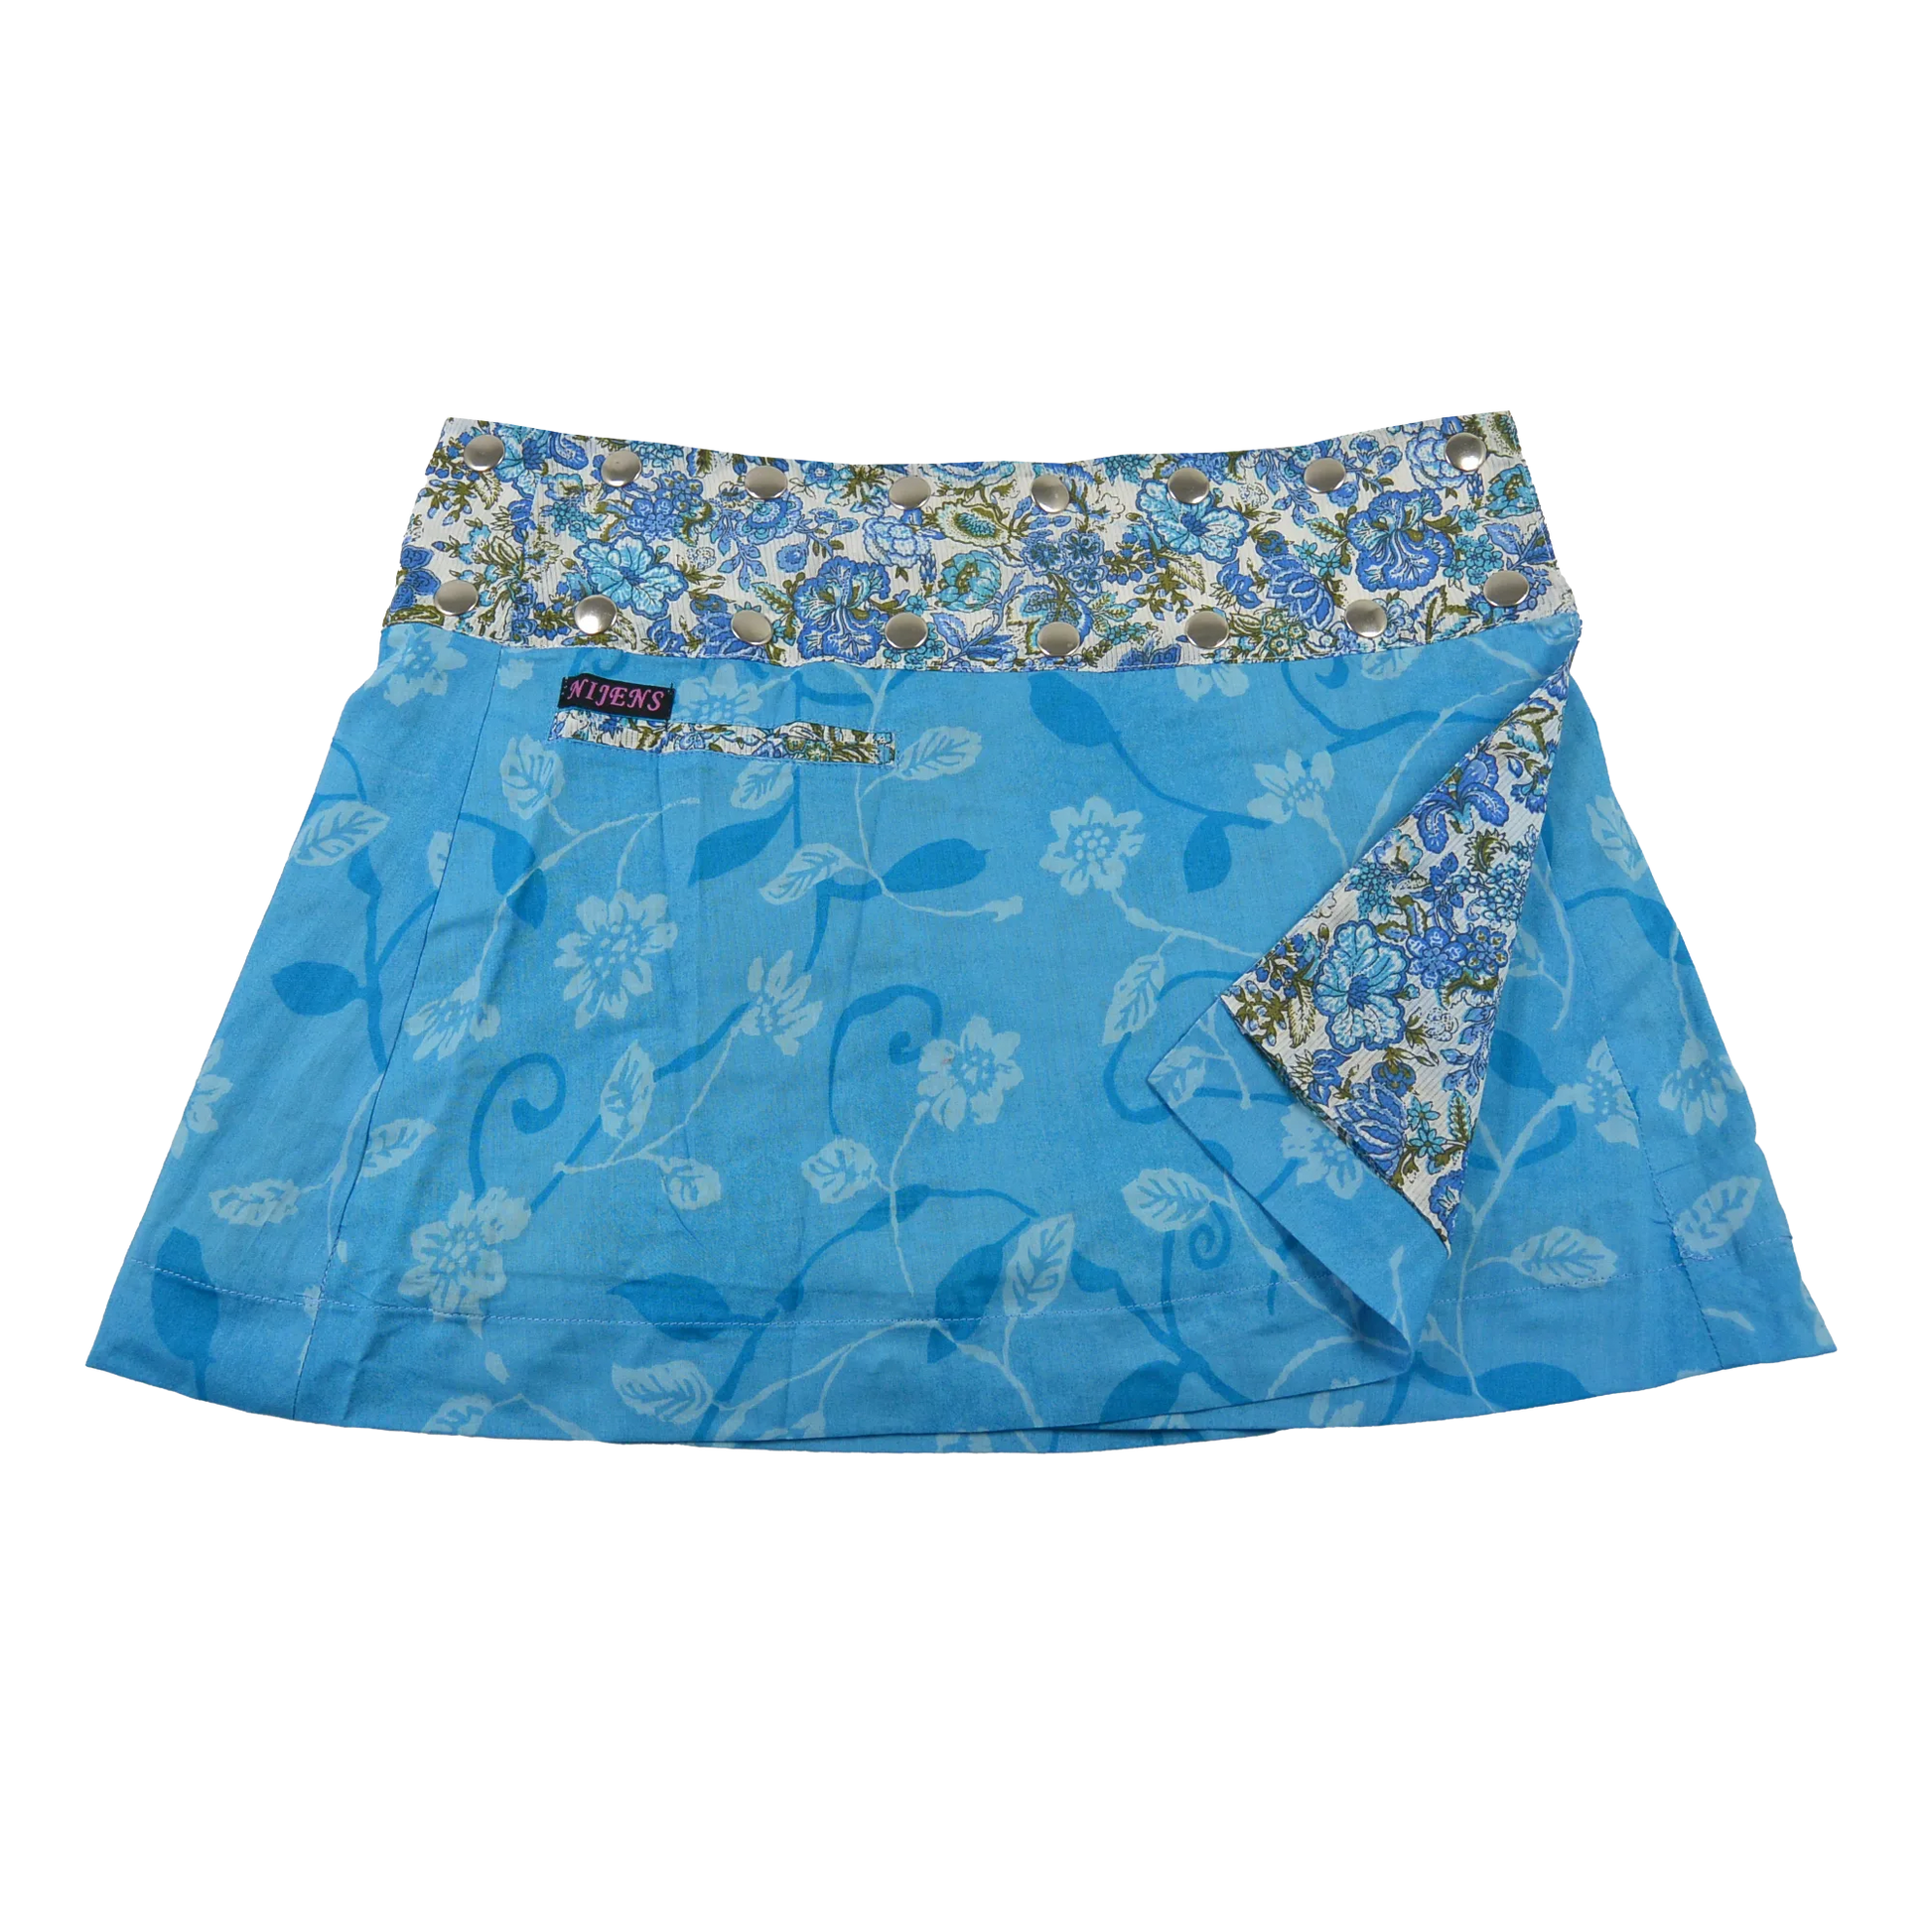 Sommerrock aus Baumwolle in Blau/Blumen, blau im Mustermix. Umfang ist verstellbar mit doppelter Druckknopfleiste mit Einsteckfach.